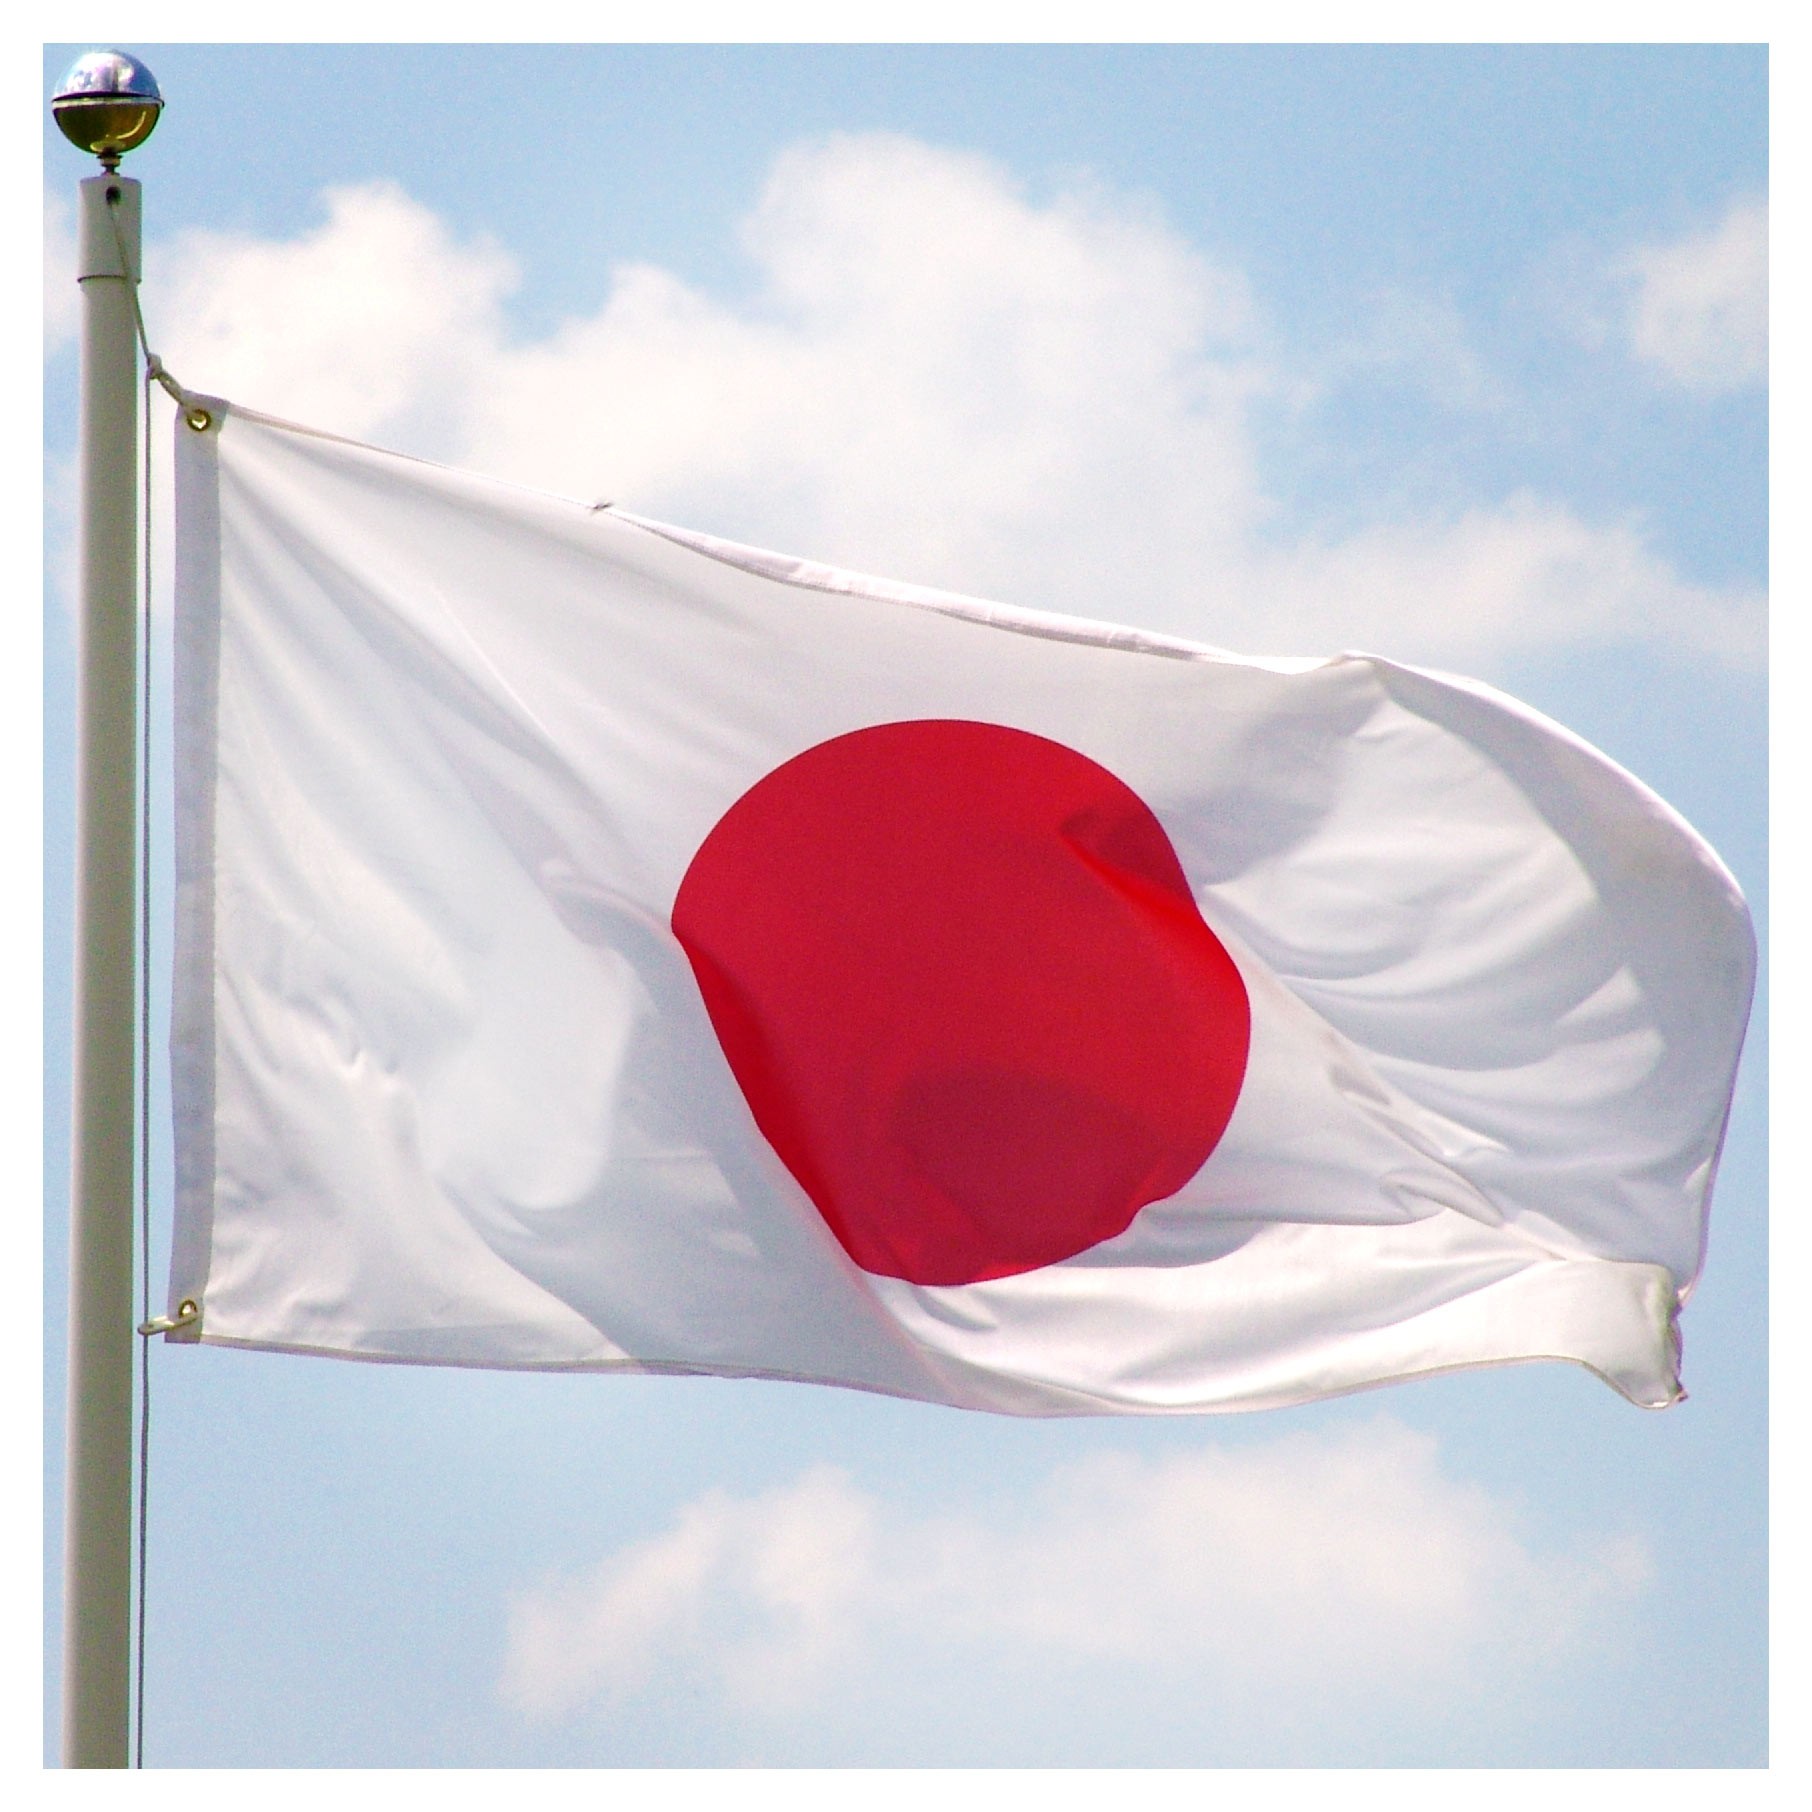 تصویر پرچم کشور ژاپن